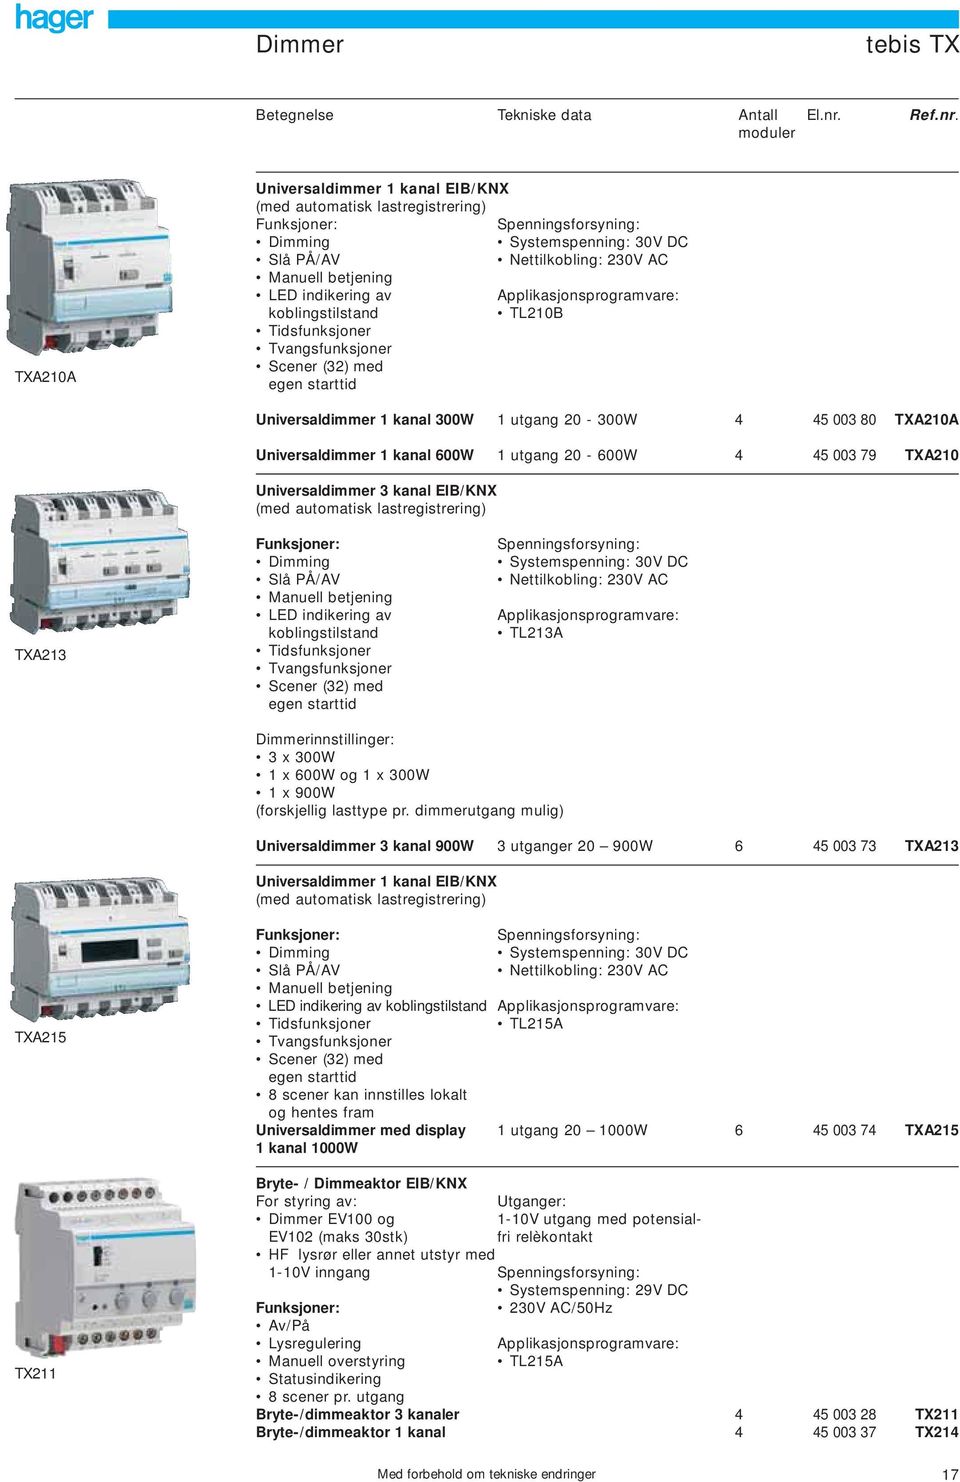 moduler TXA20A Universaldimmer kanal EIB/KNX (med automatisk lastregistrering) Dimming Systemspenning: 30V DC Slå PÅ/AV Nettilkobling: 230V AC Manuell betjening LED indikering av